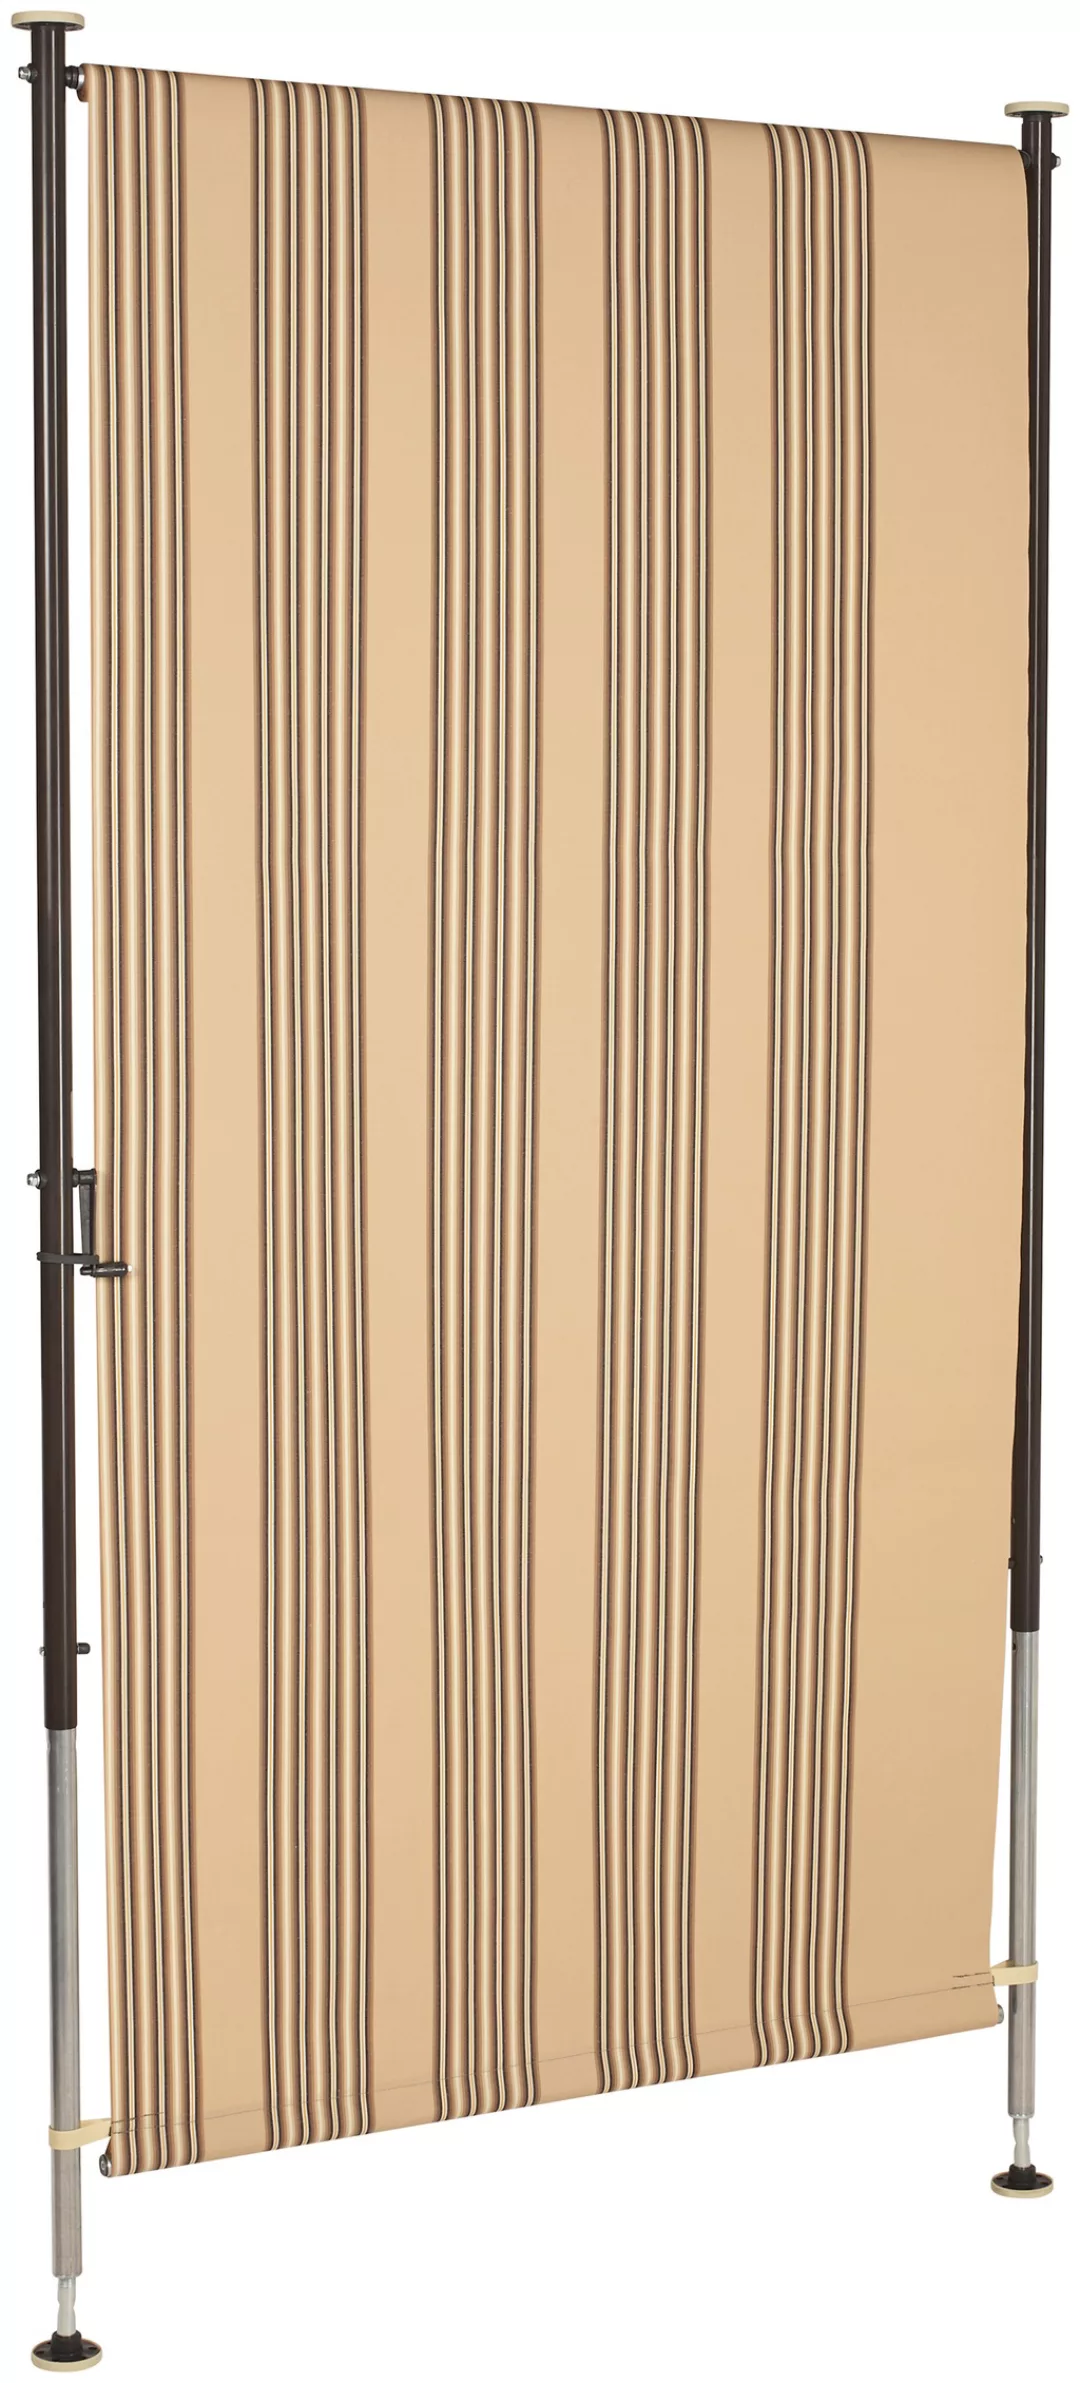 Angerer Freizeitmöbel Klemm-Senkrechtmarkise, beige/braun, BxH: 150x225 cm günstig online kaufen